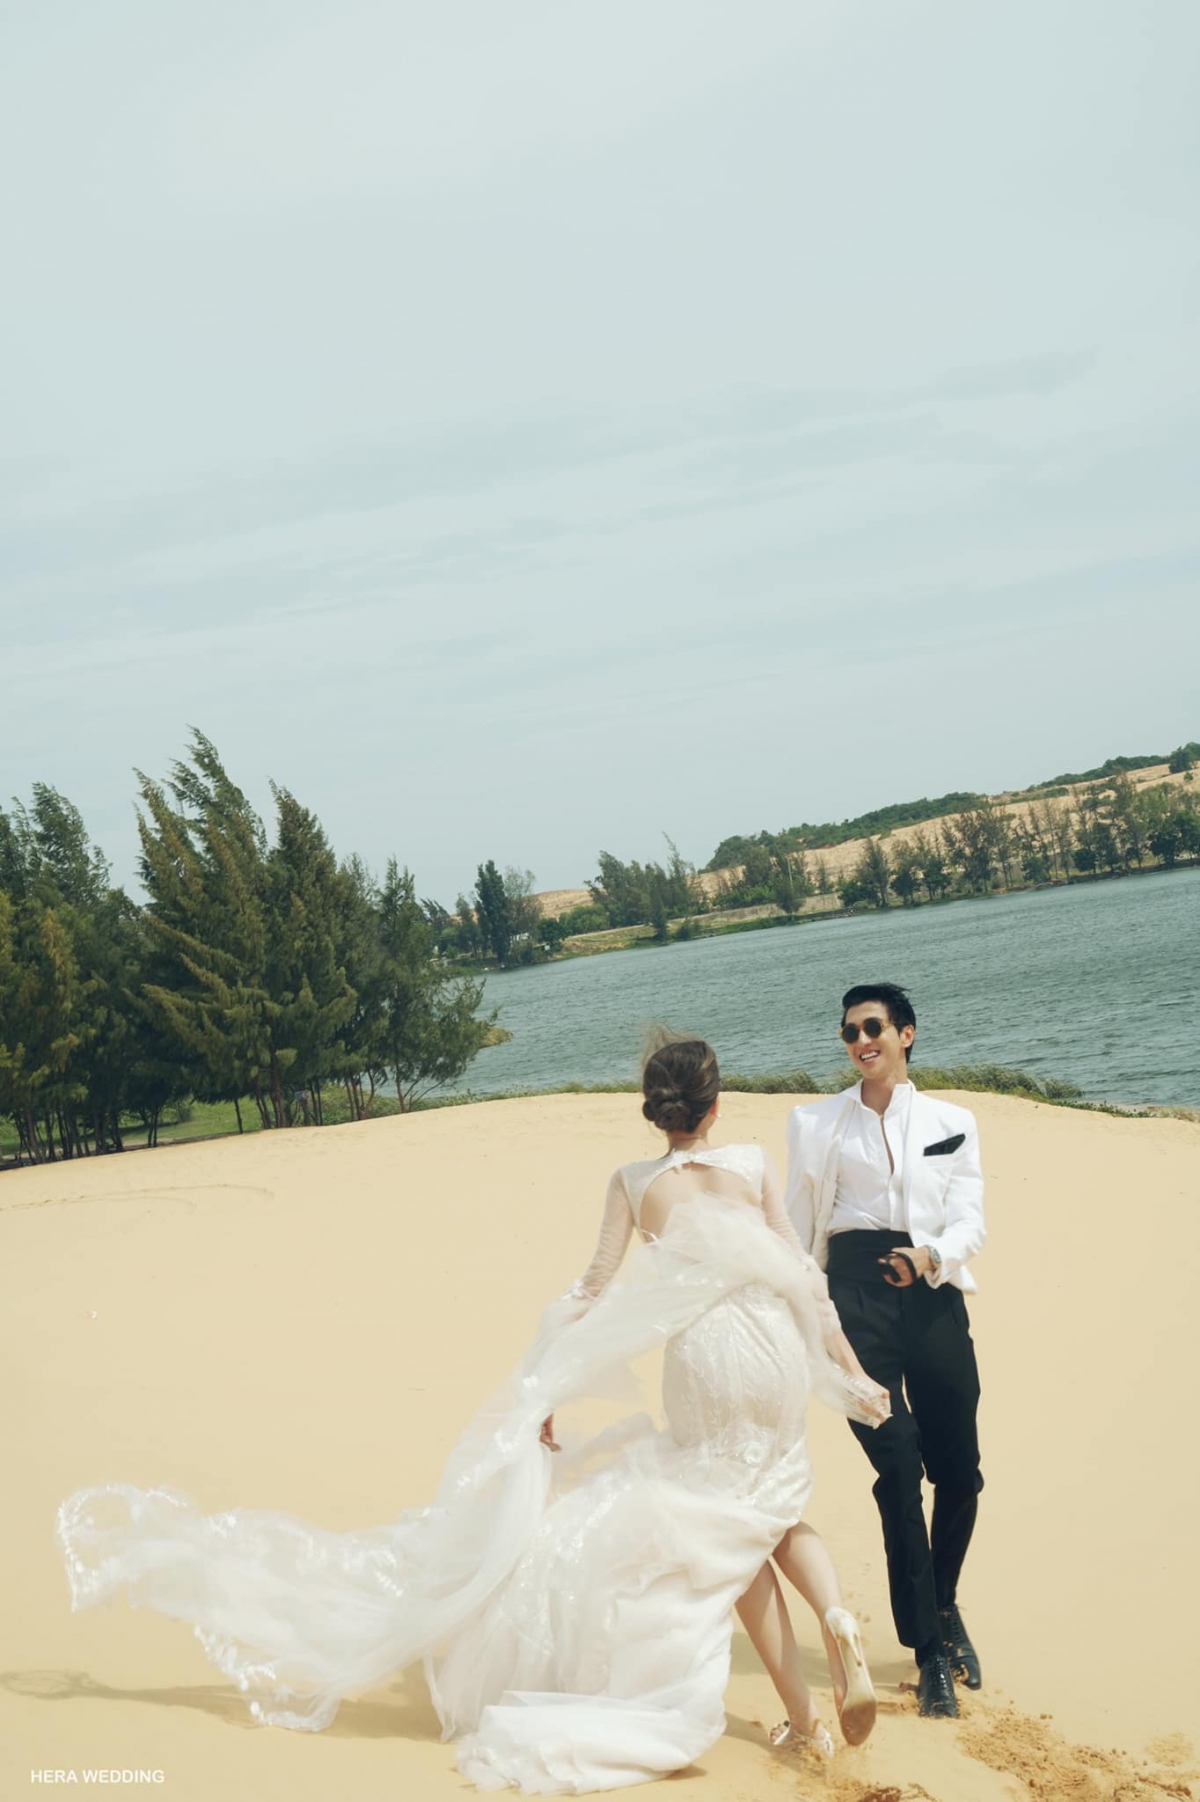 Bình An – Phương Nga tung loạt ảnh cưới ‘tình bể tình’ giữa đồi cát trắng